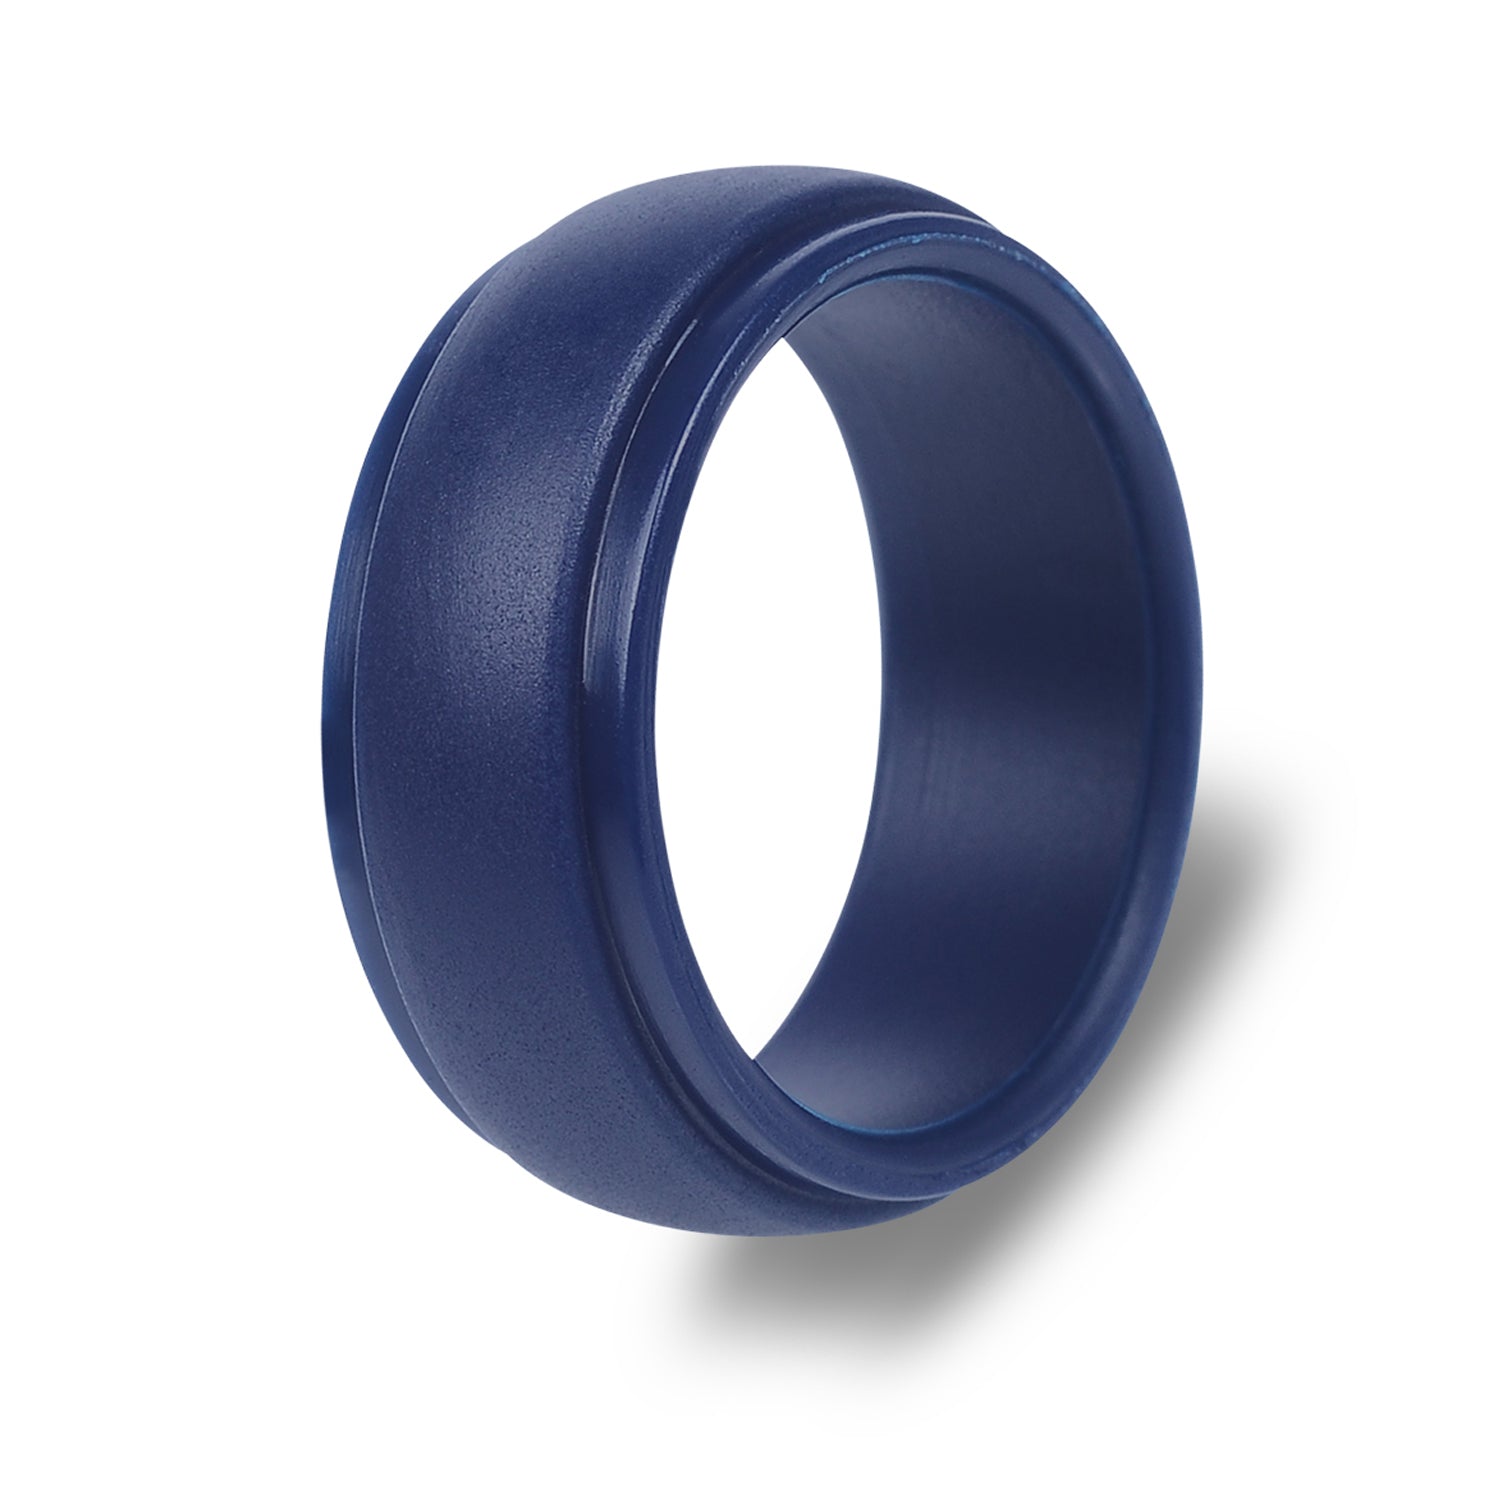 The Nova - Silicone Ring